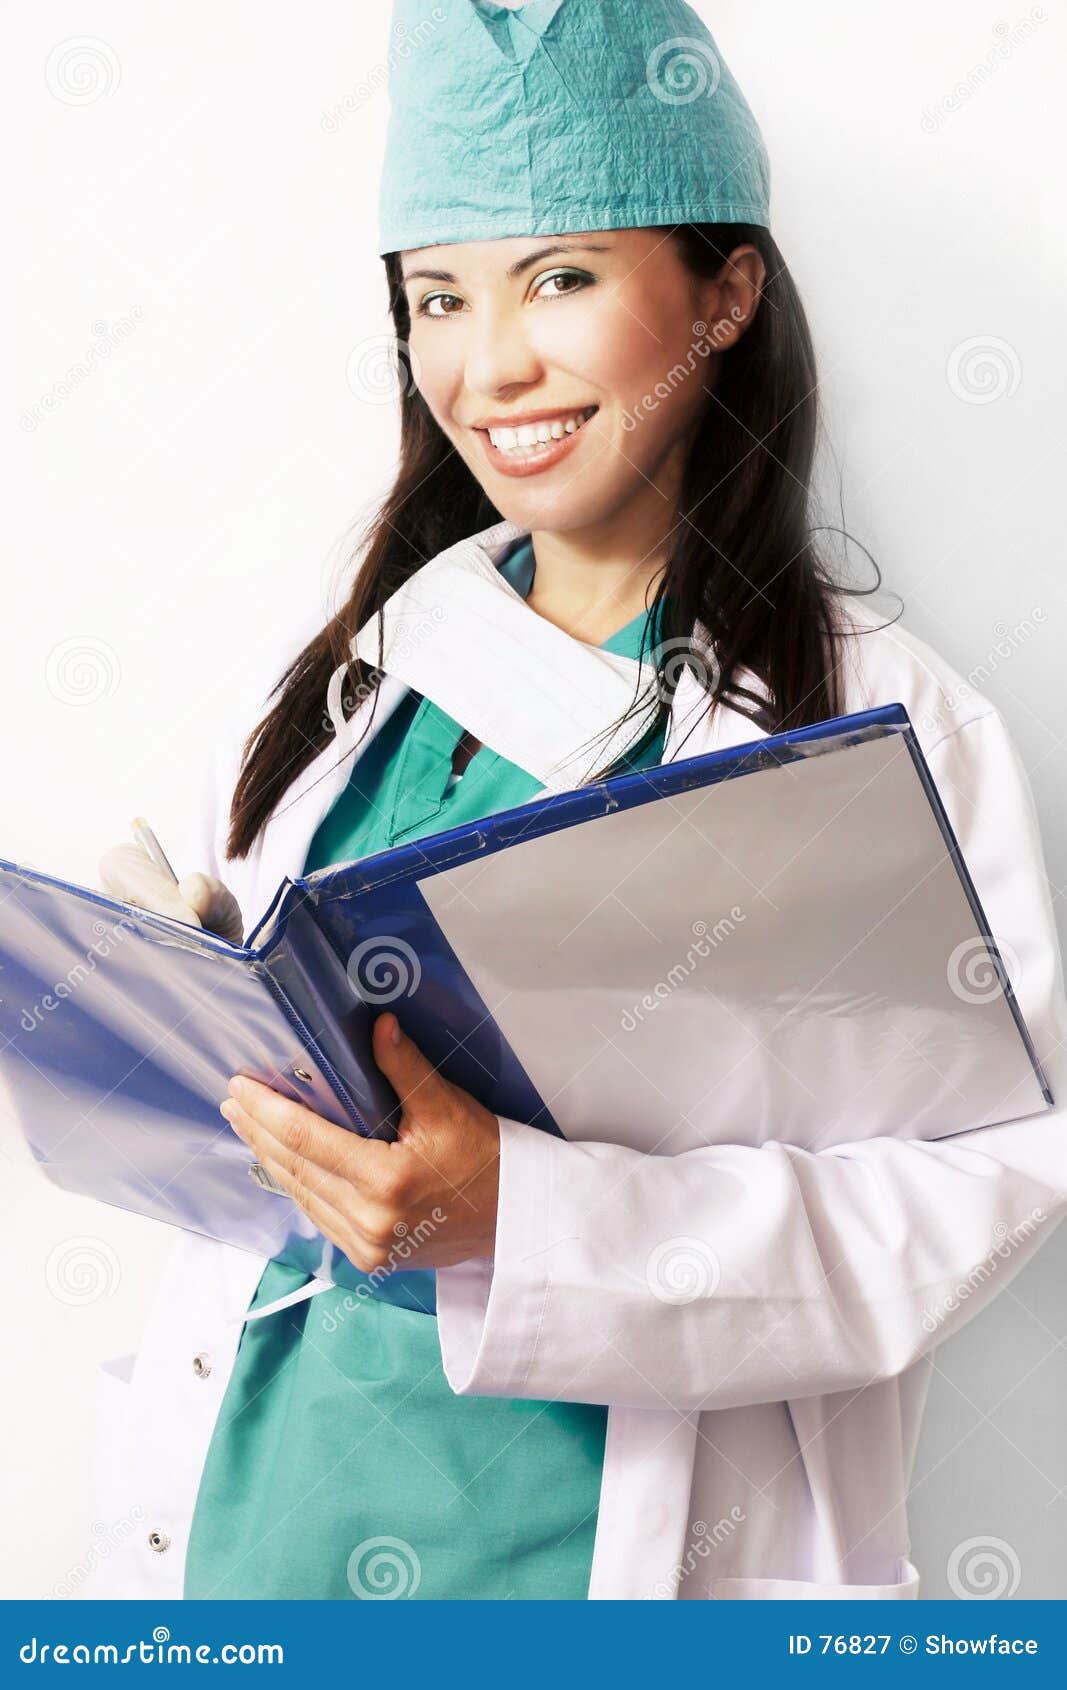 medical intern